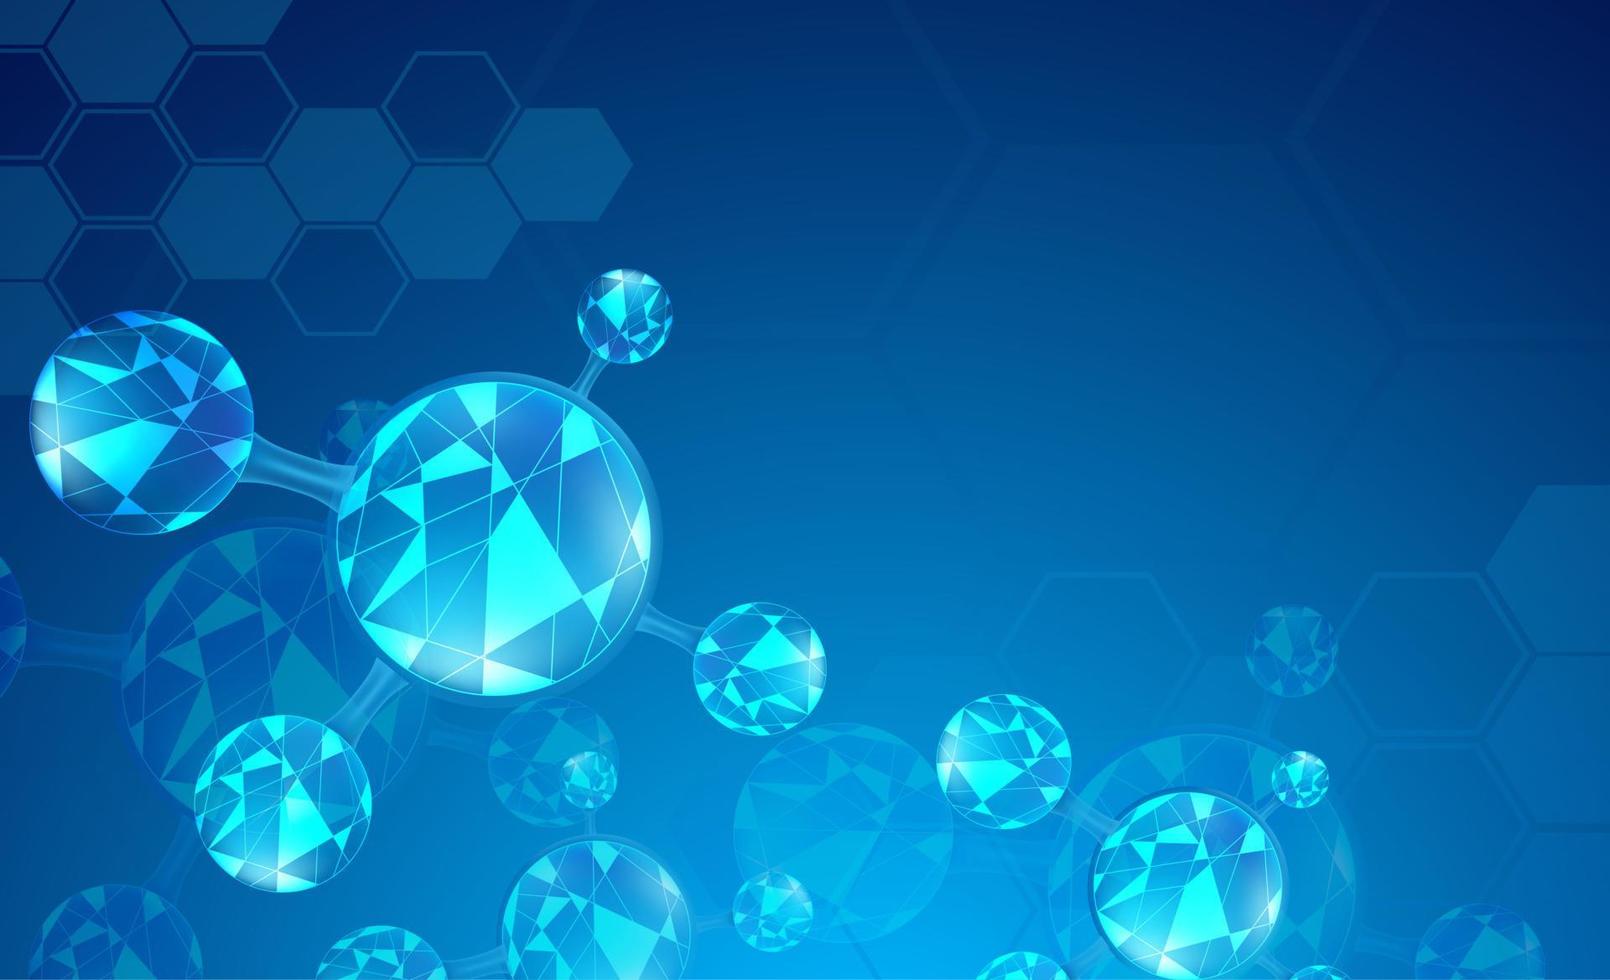 abstracte wetenschappelijke achtergrond met moleculen elementen. gradiënt blauwe achtergrond met molecuul dna voor medische, wetenschappelijke en technologische concepten. vector illustratie